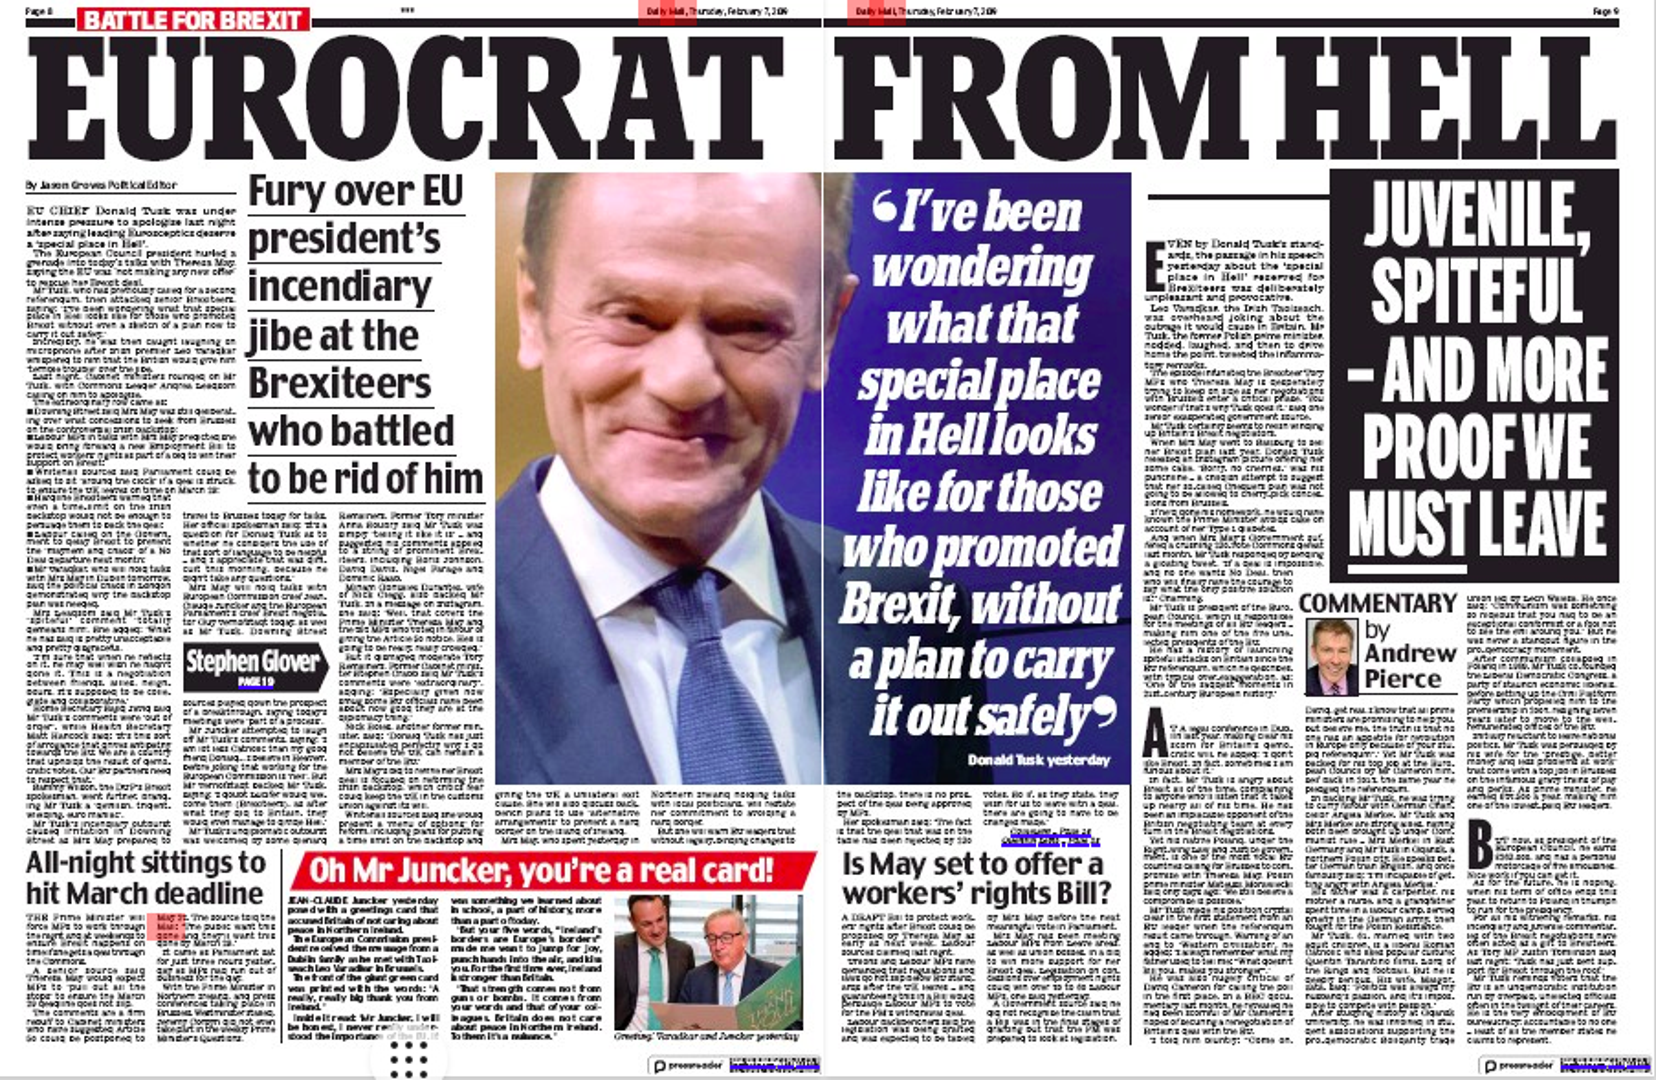 “Eurokrat iz pakla” glasi naslov u jučerašnjem izdanju Daily Maila u kojem napadaju Tuska i pozivaju ga da se ispriča.